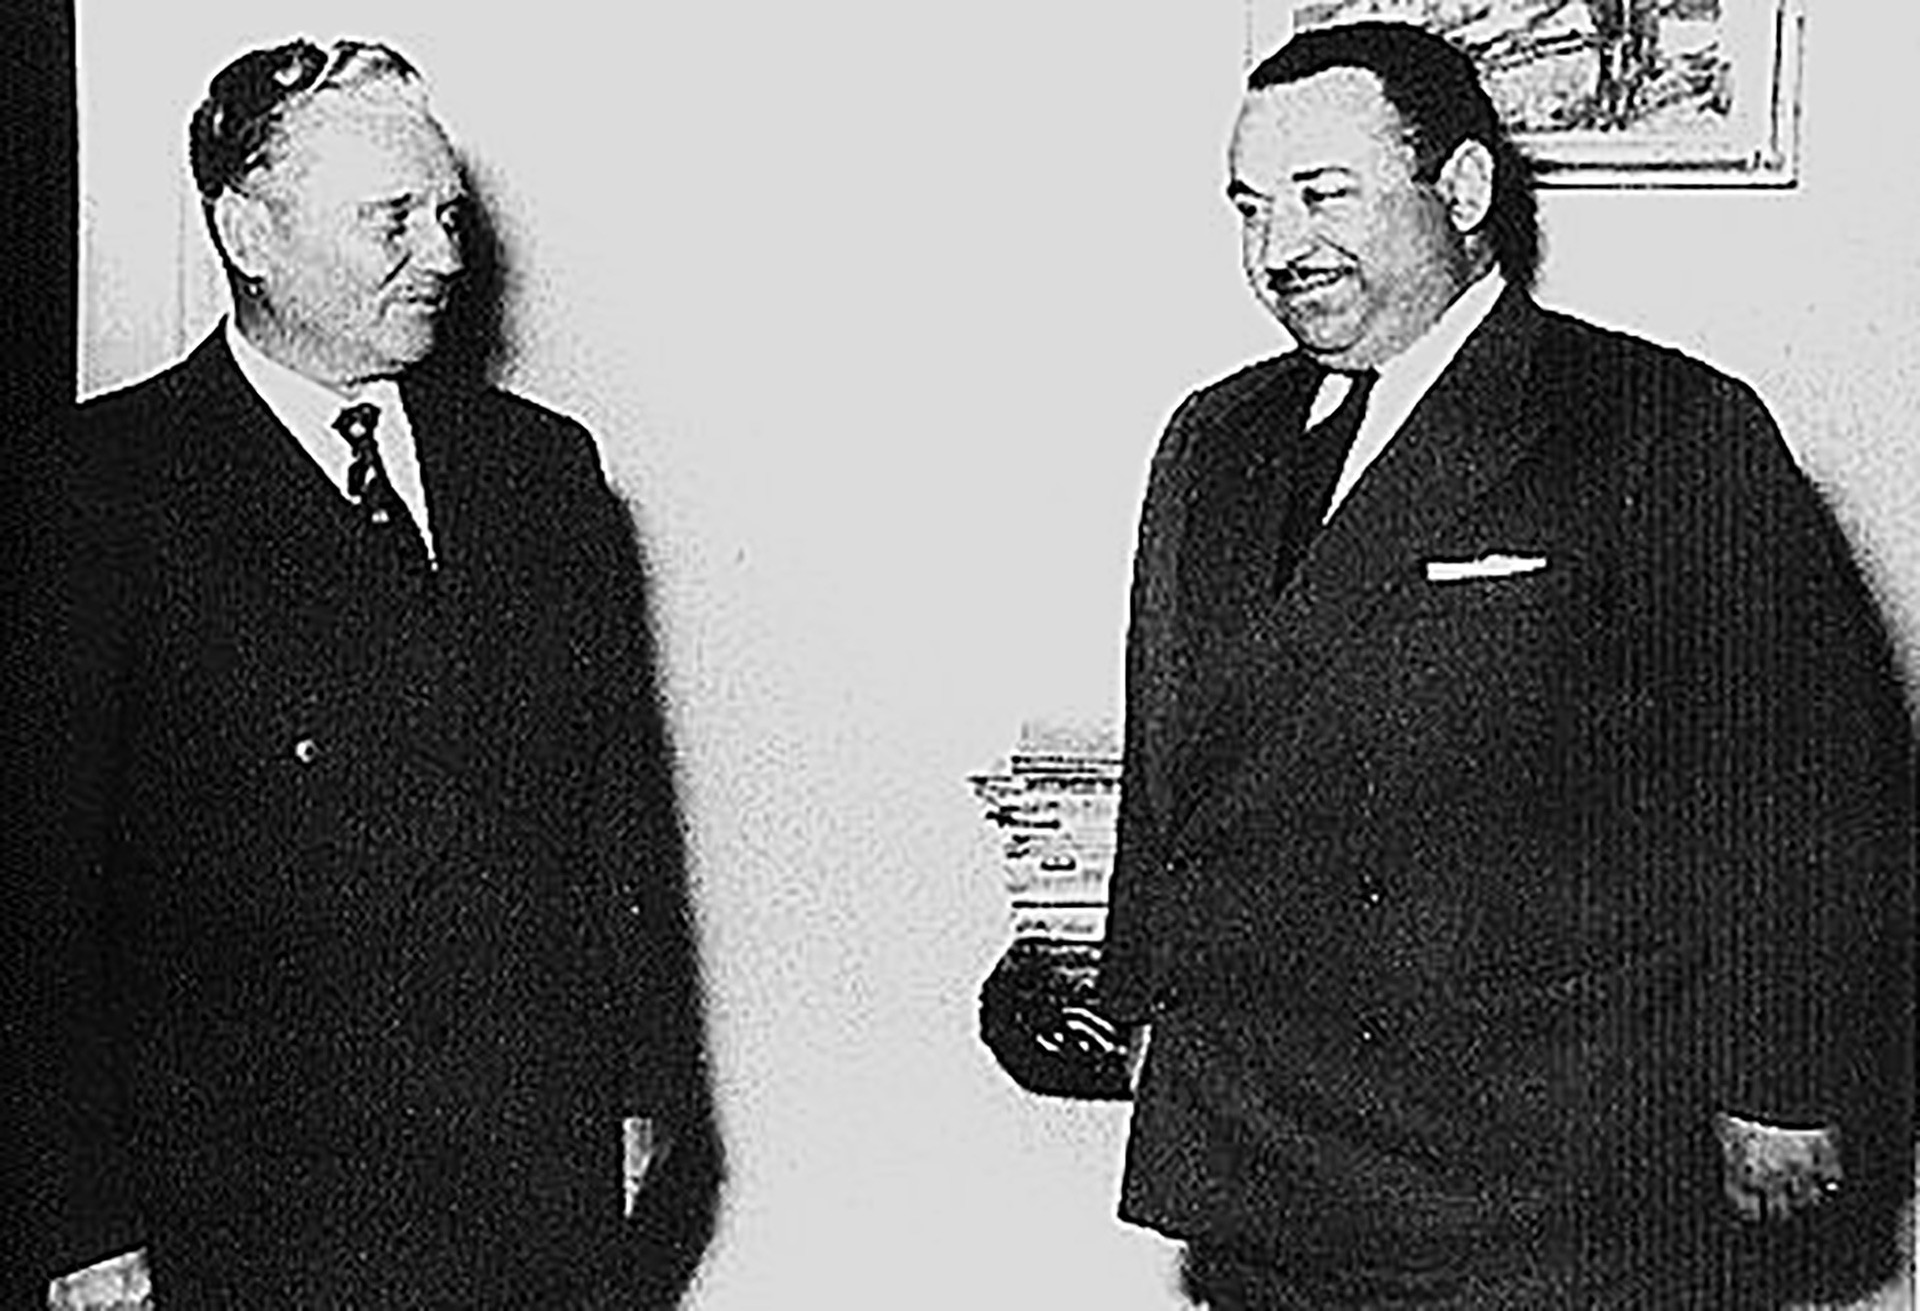 Јосип Броз Тито са Јосифом Ромуалдовичем Григулевичем, (познатим под именом Теодоро Б. Кастро), амбасадором Костарике у Италији и Југославији.